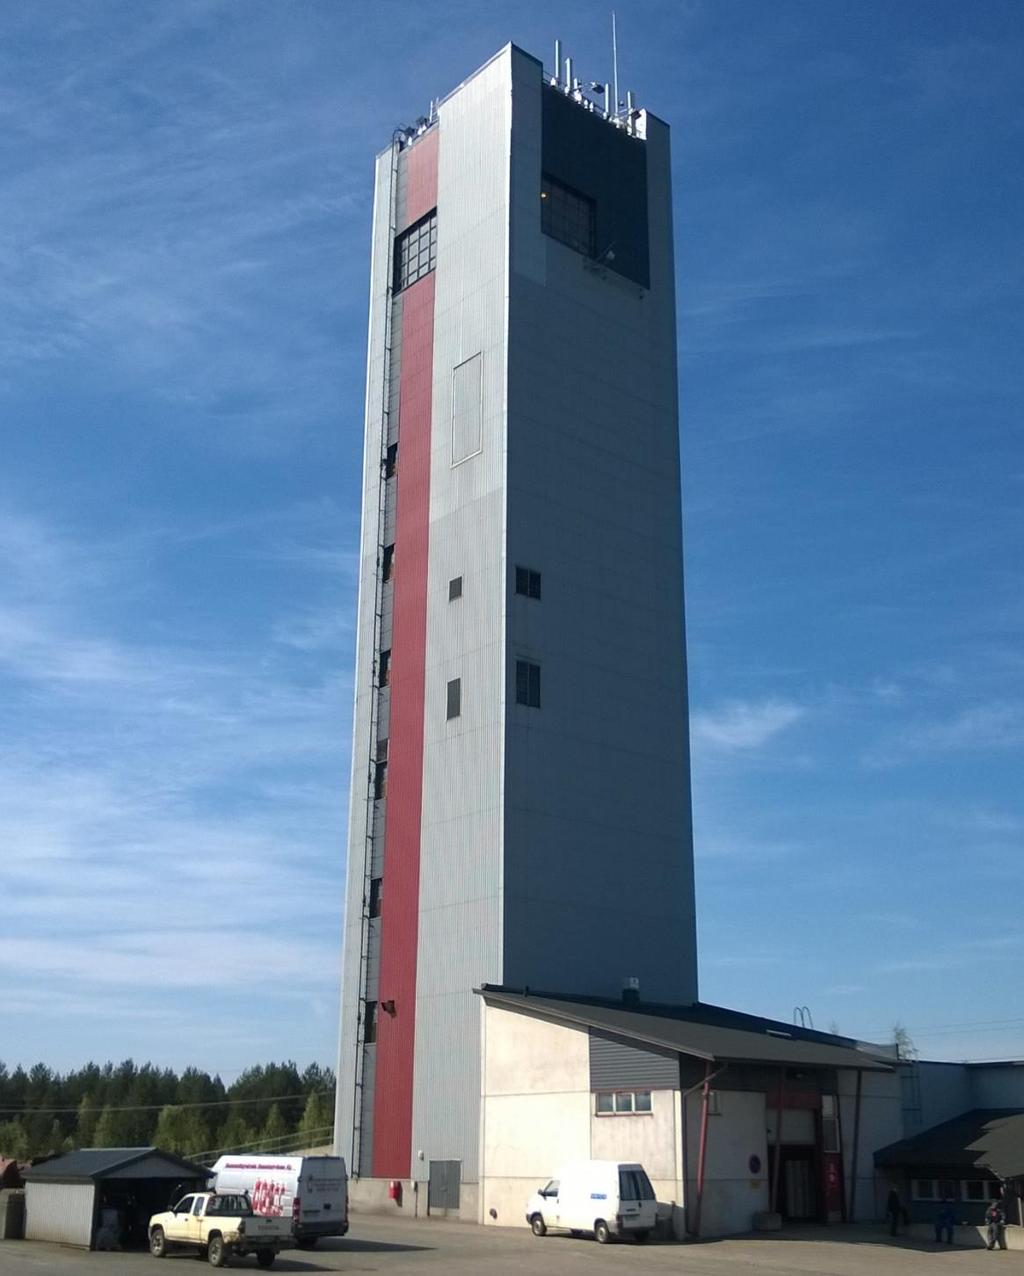 2 NOSTOKONE Kaivoksen yksi keskeisimmistä laitteista on automatisoitu nostokone, jolla louhittu malmi nostetaan maan päälle rikastettavaksi. Nostokone toimii myös kaivoshenkilöstön hissinä.